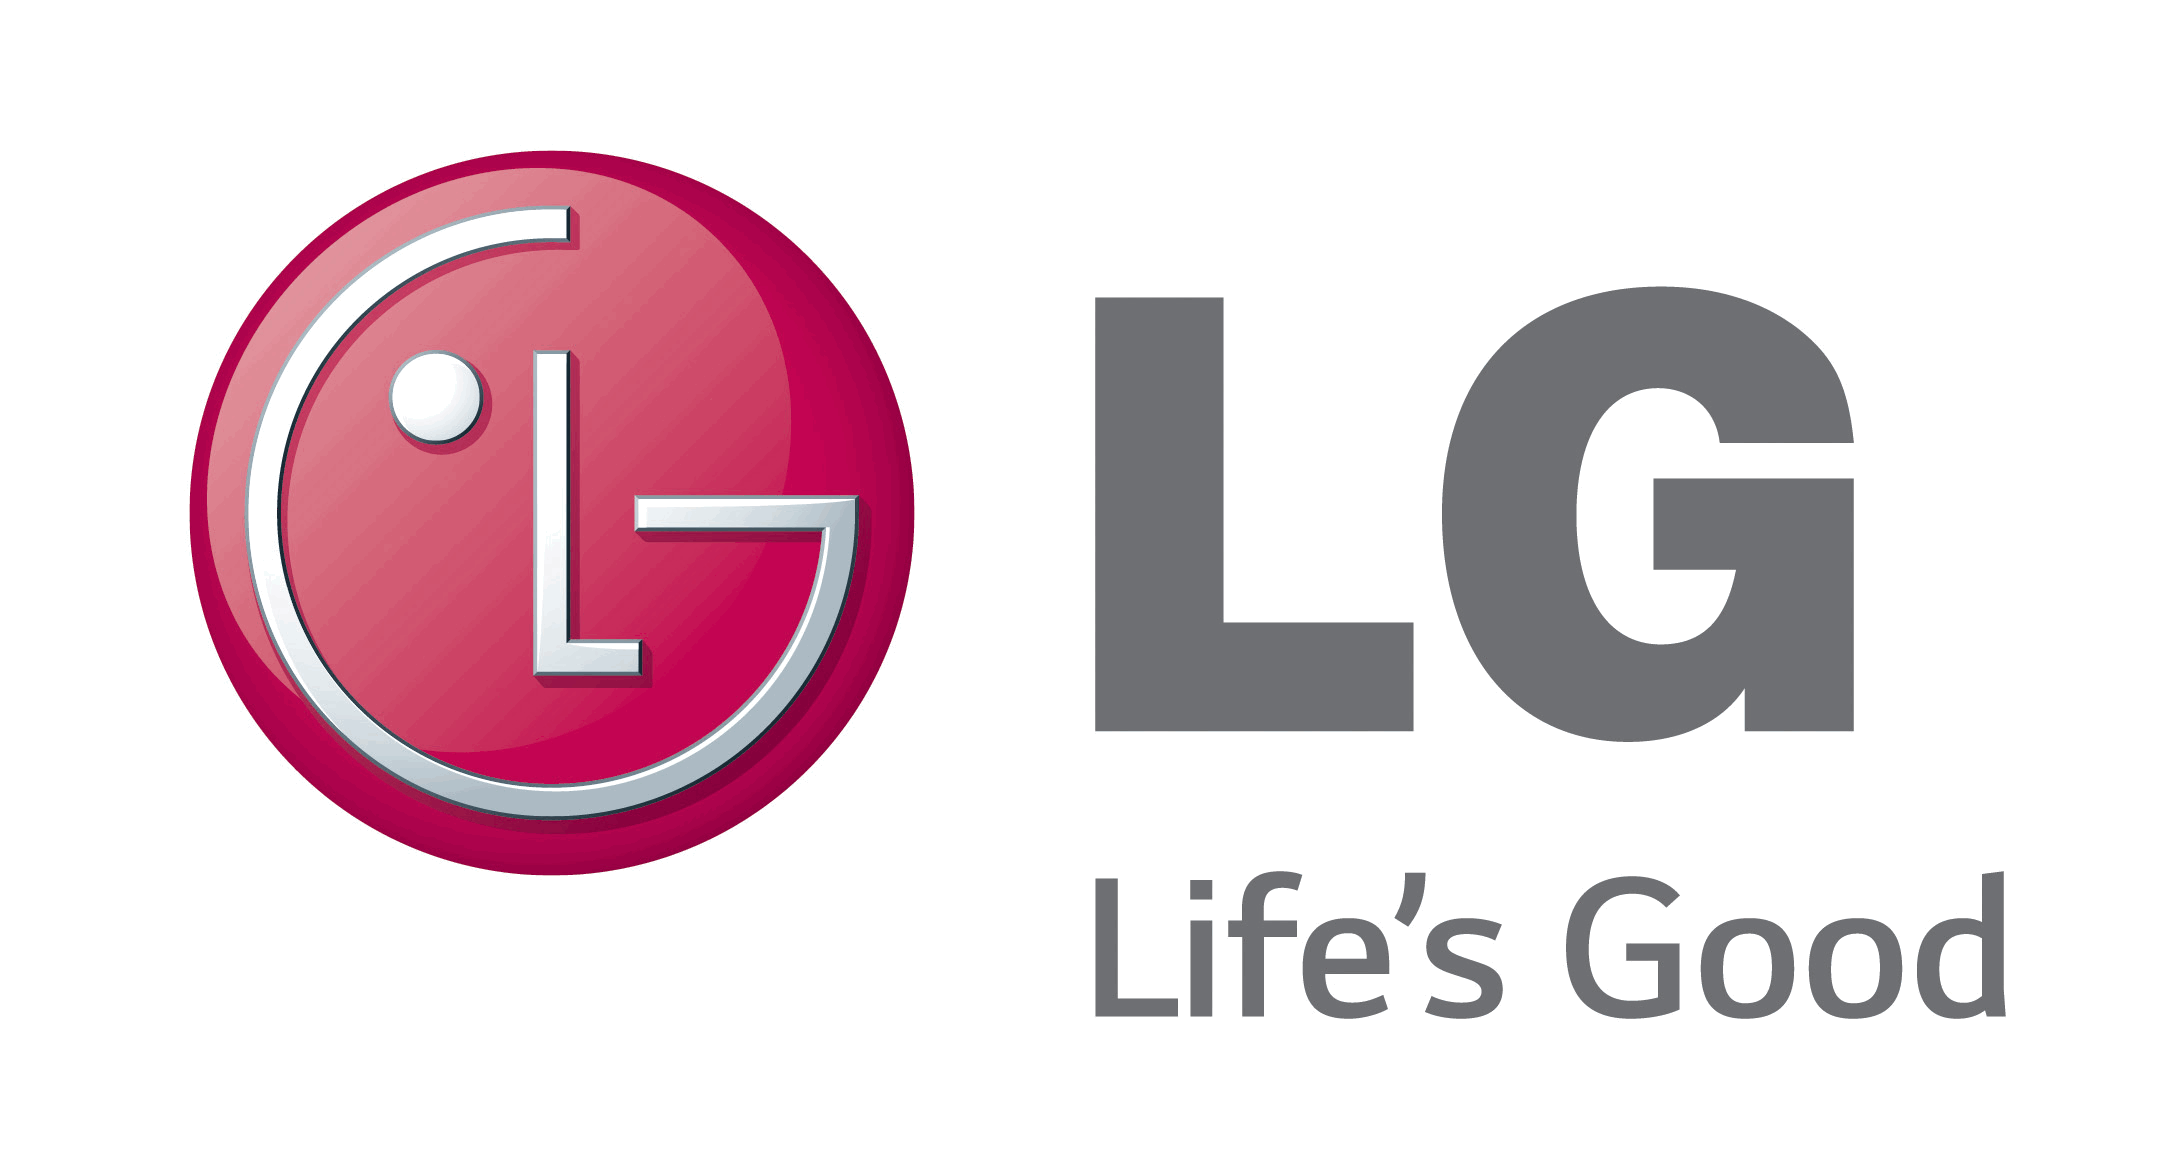 LG G VISTA bateria sem carga